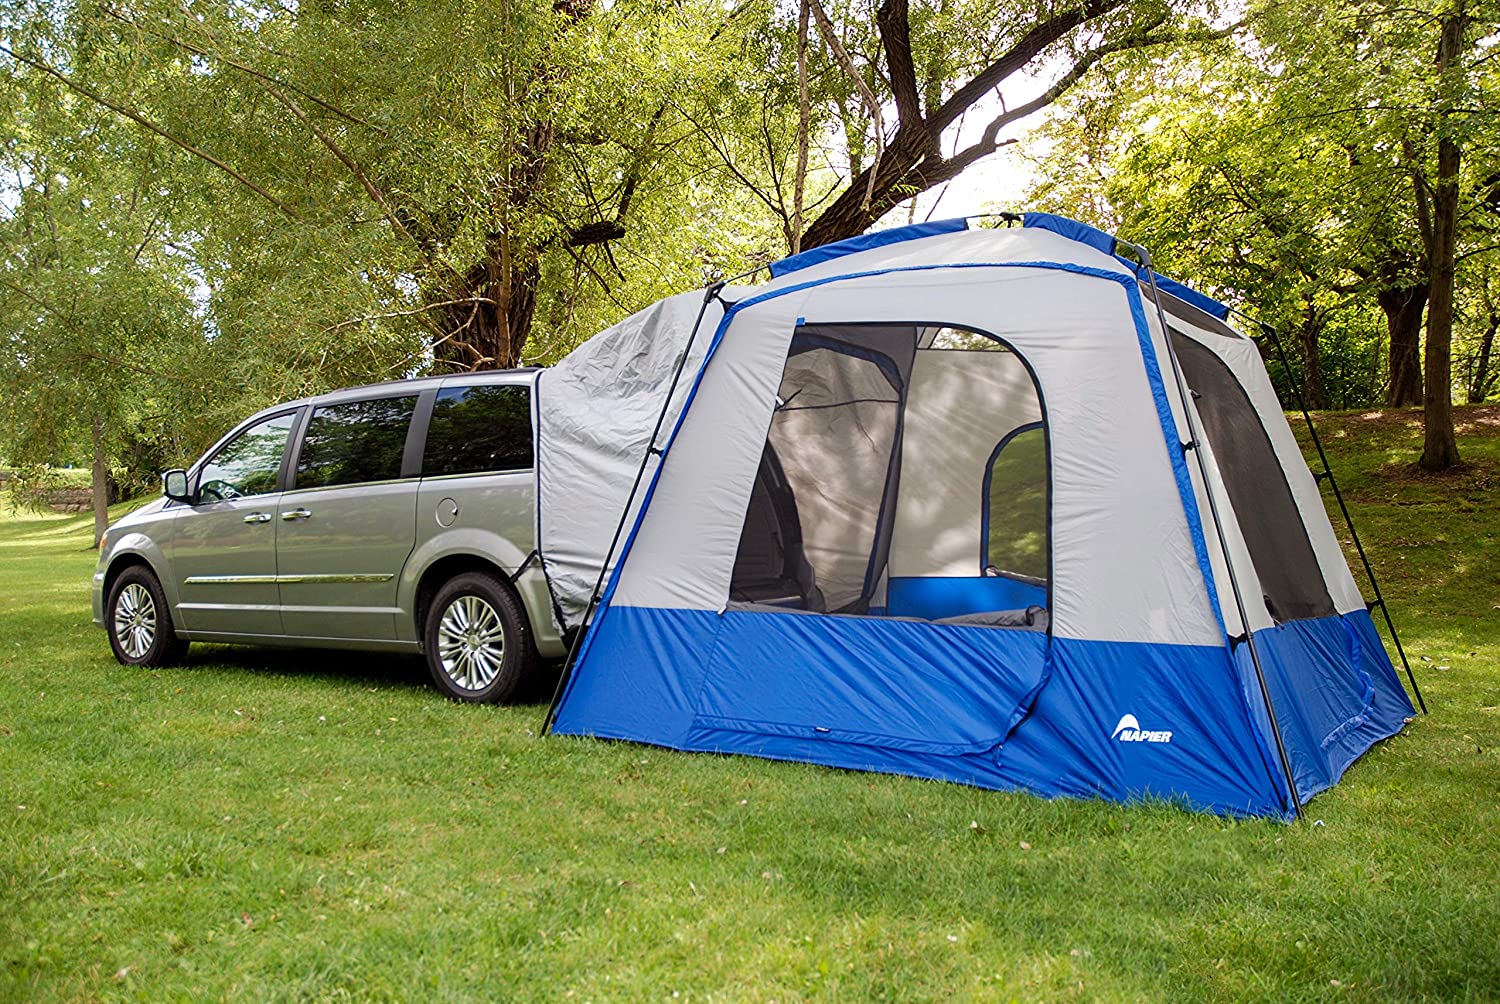 Best Truck Bed Tent